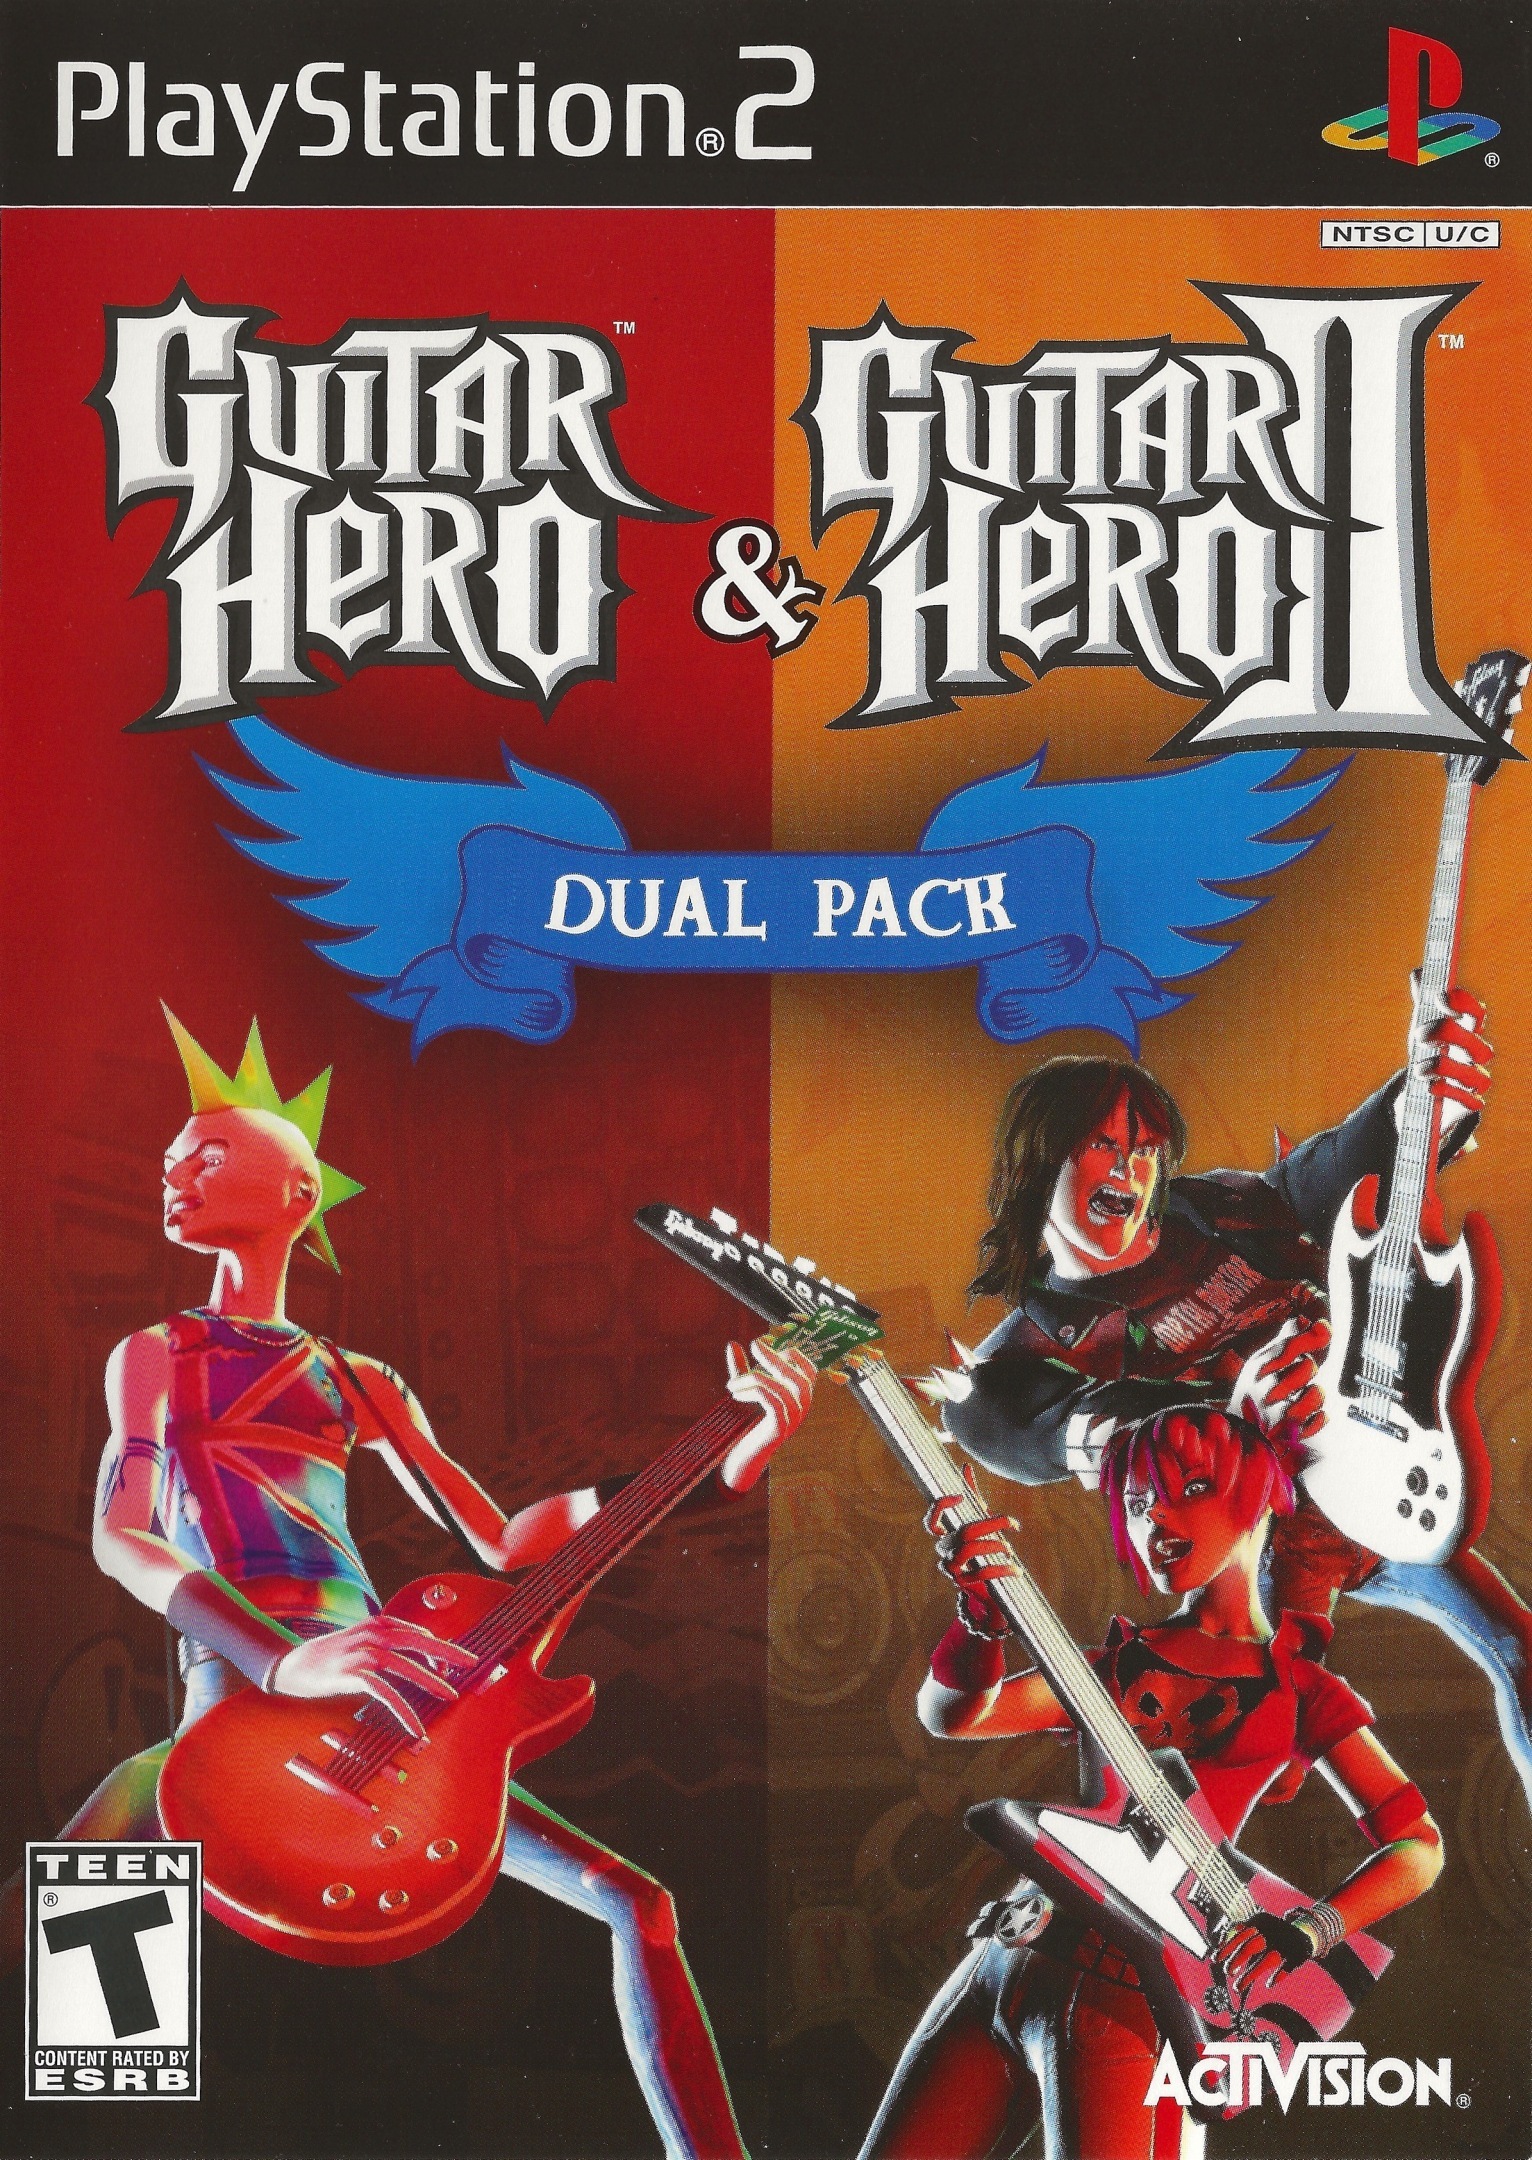 ps2 guitar hero games